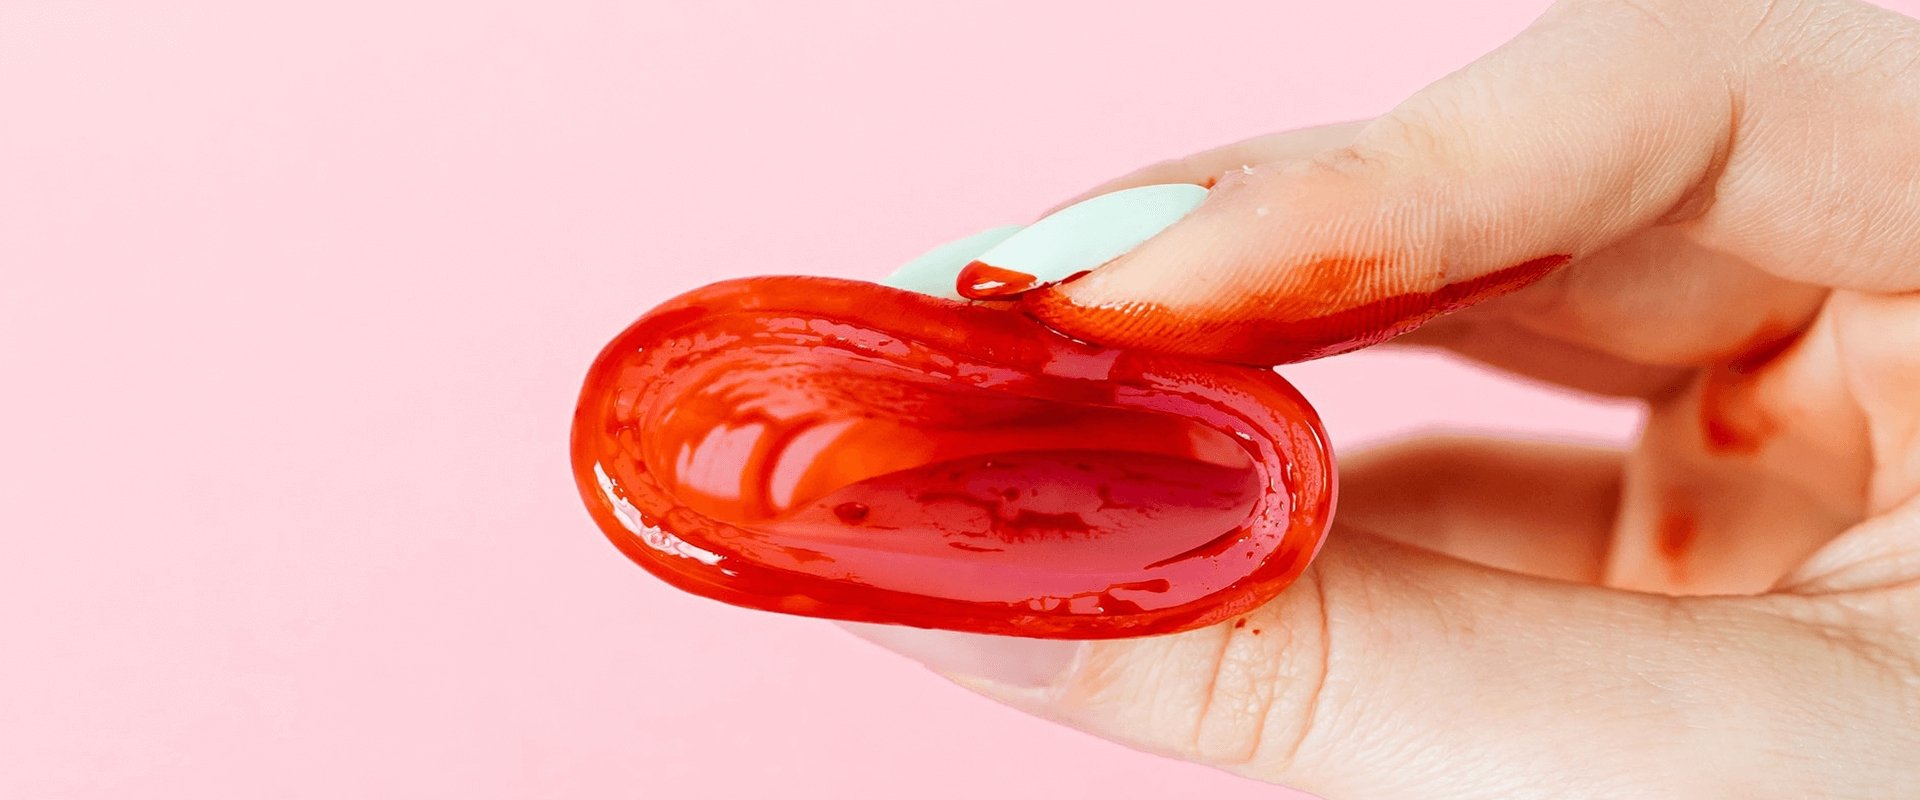 Causas de coágulos na menstruação